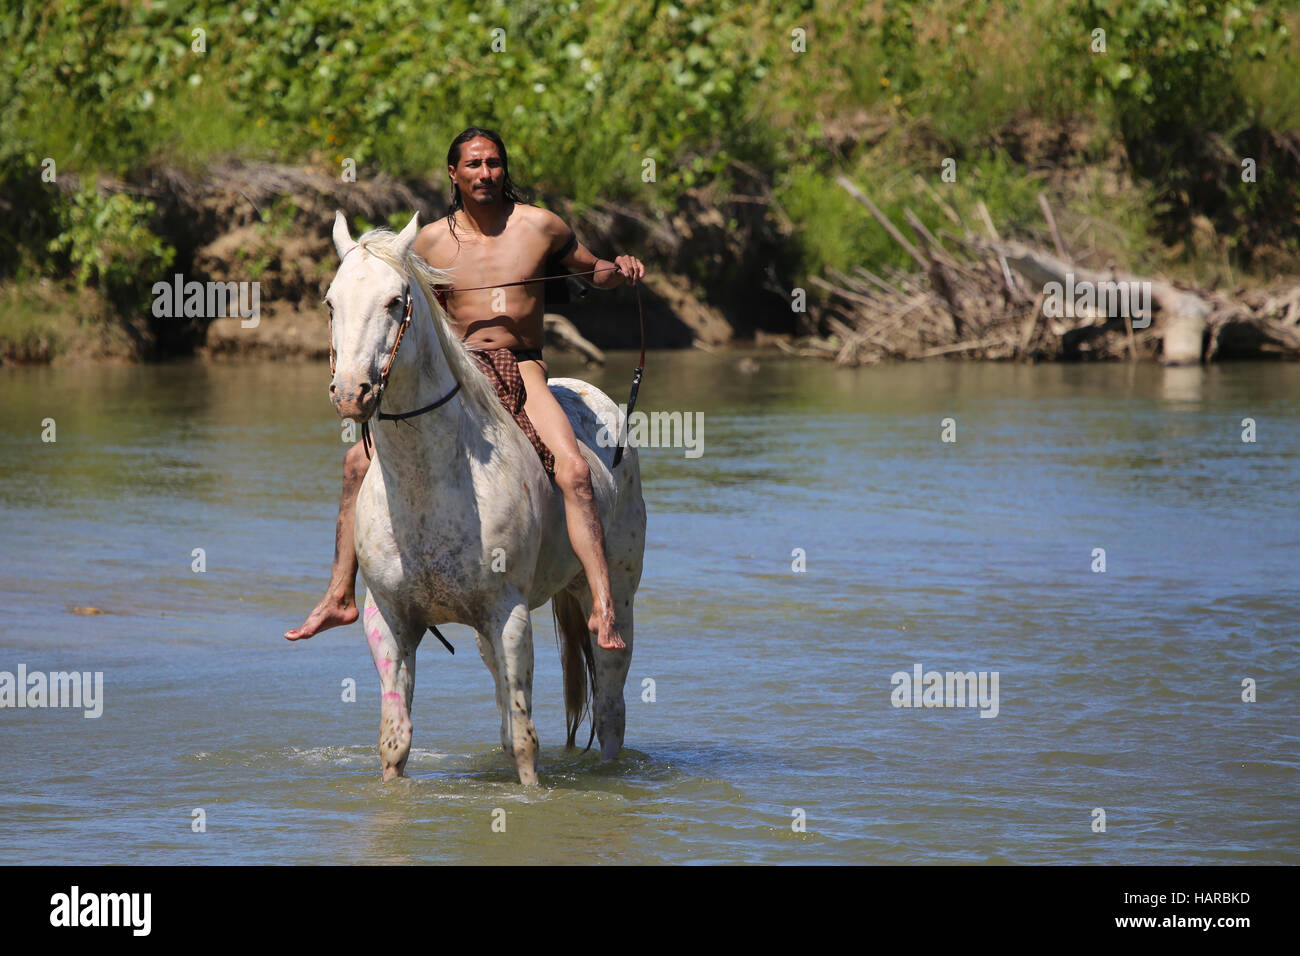 Native American Indian auf dem Pferderücken in Fluss Stockfoto